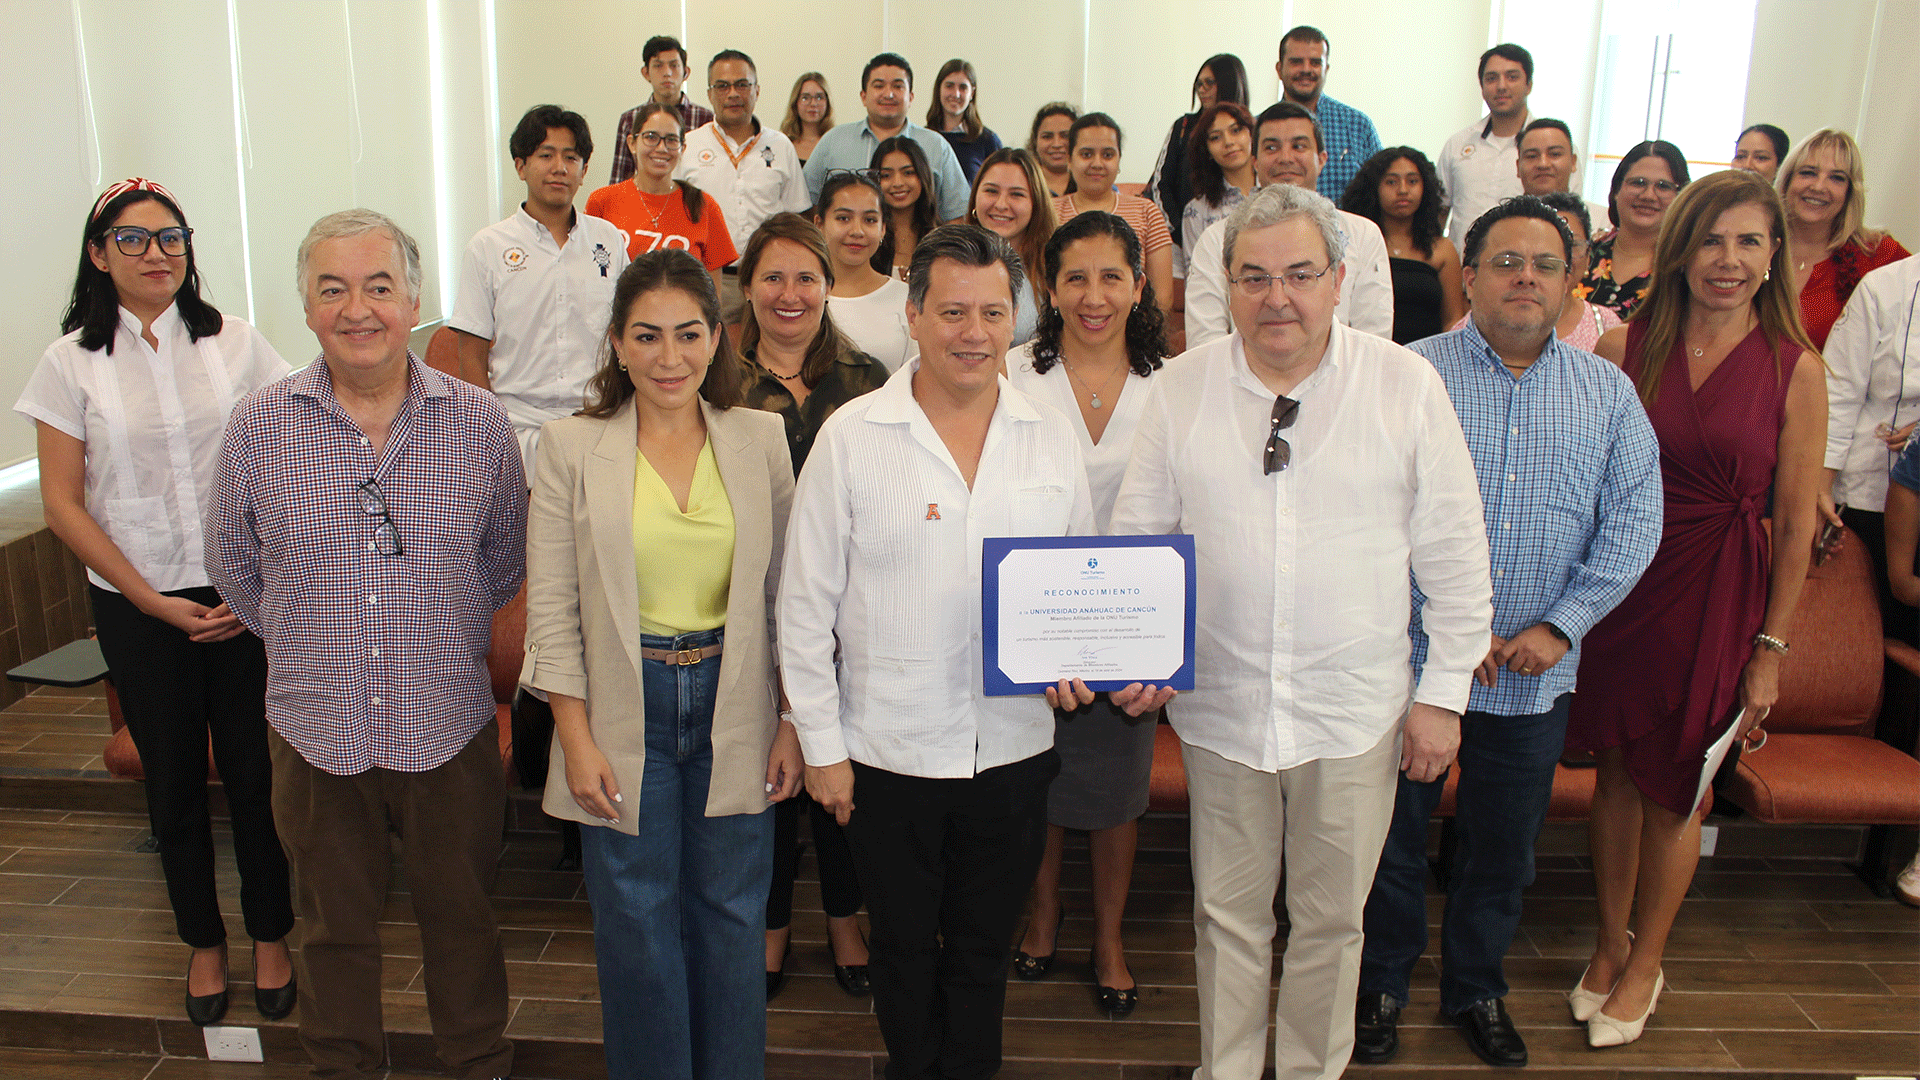 el-excmo-embajador-de-la-onu-turismo-reconoce-el-compromiso-de-la-universidad-anahuac-cancun-con-el-turismo-sostenible